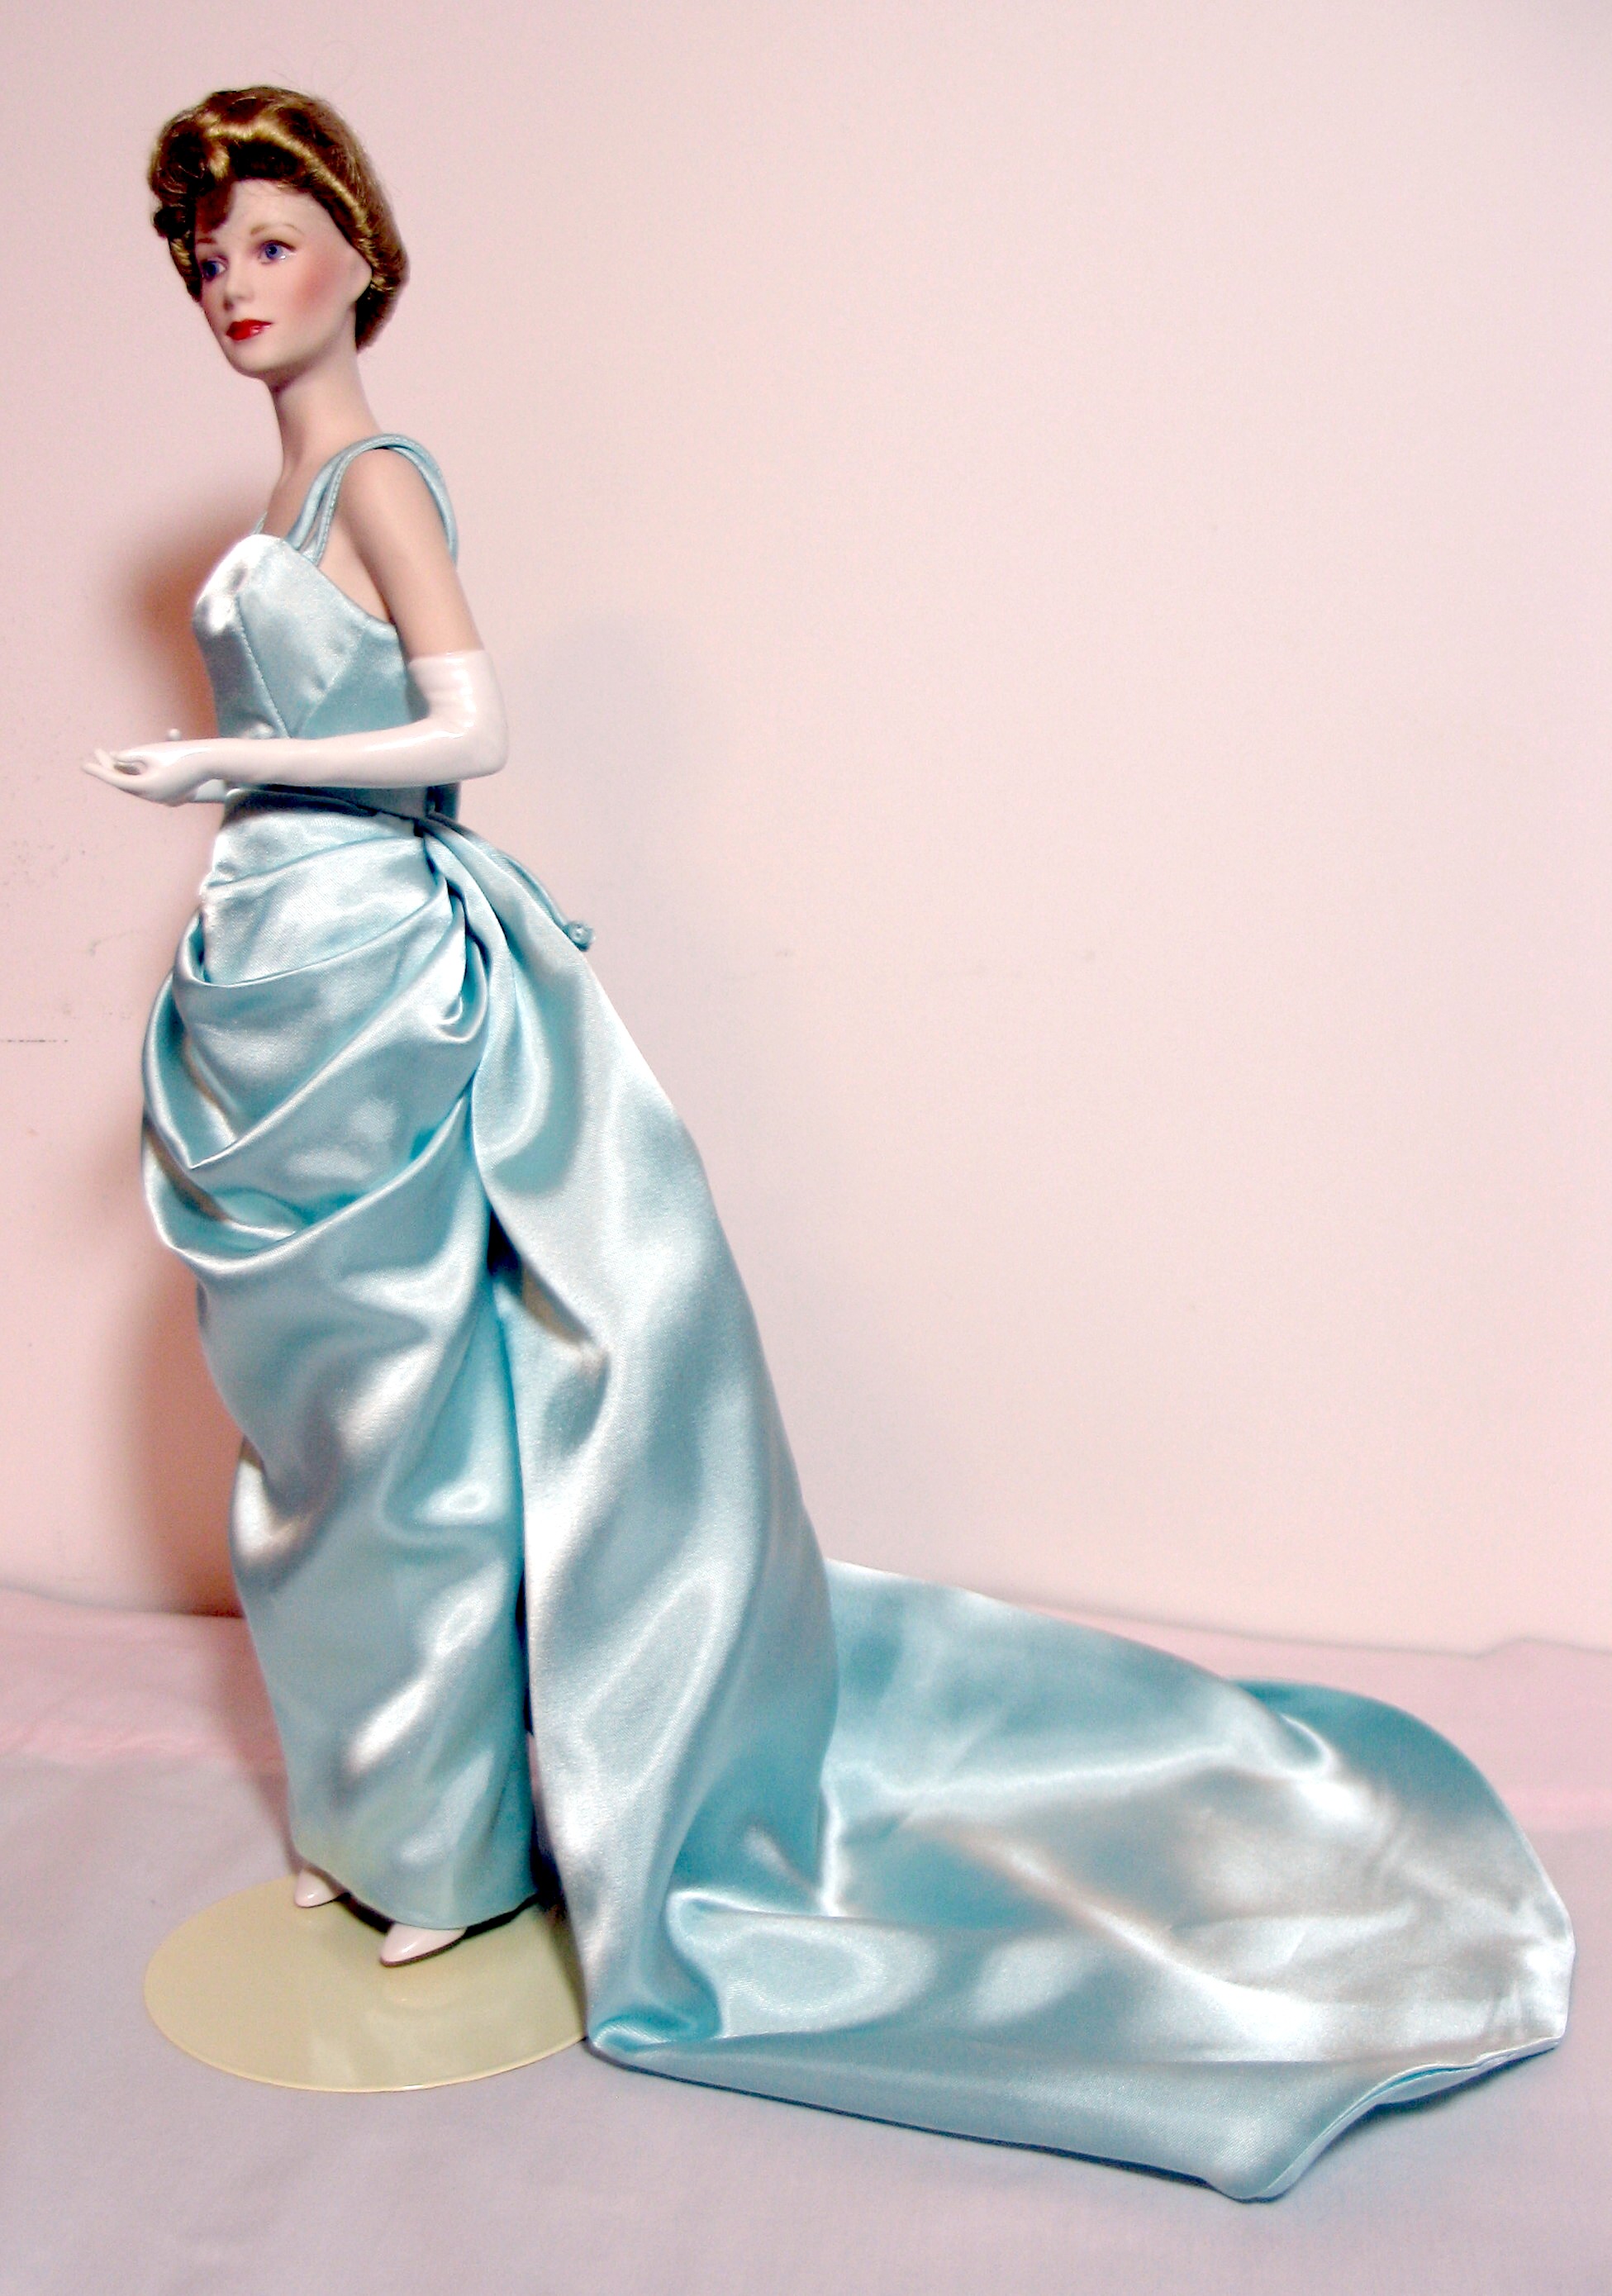 Grace Kelly Oscar dress